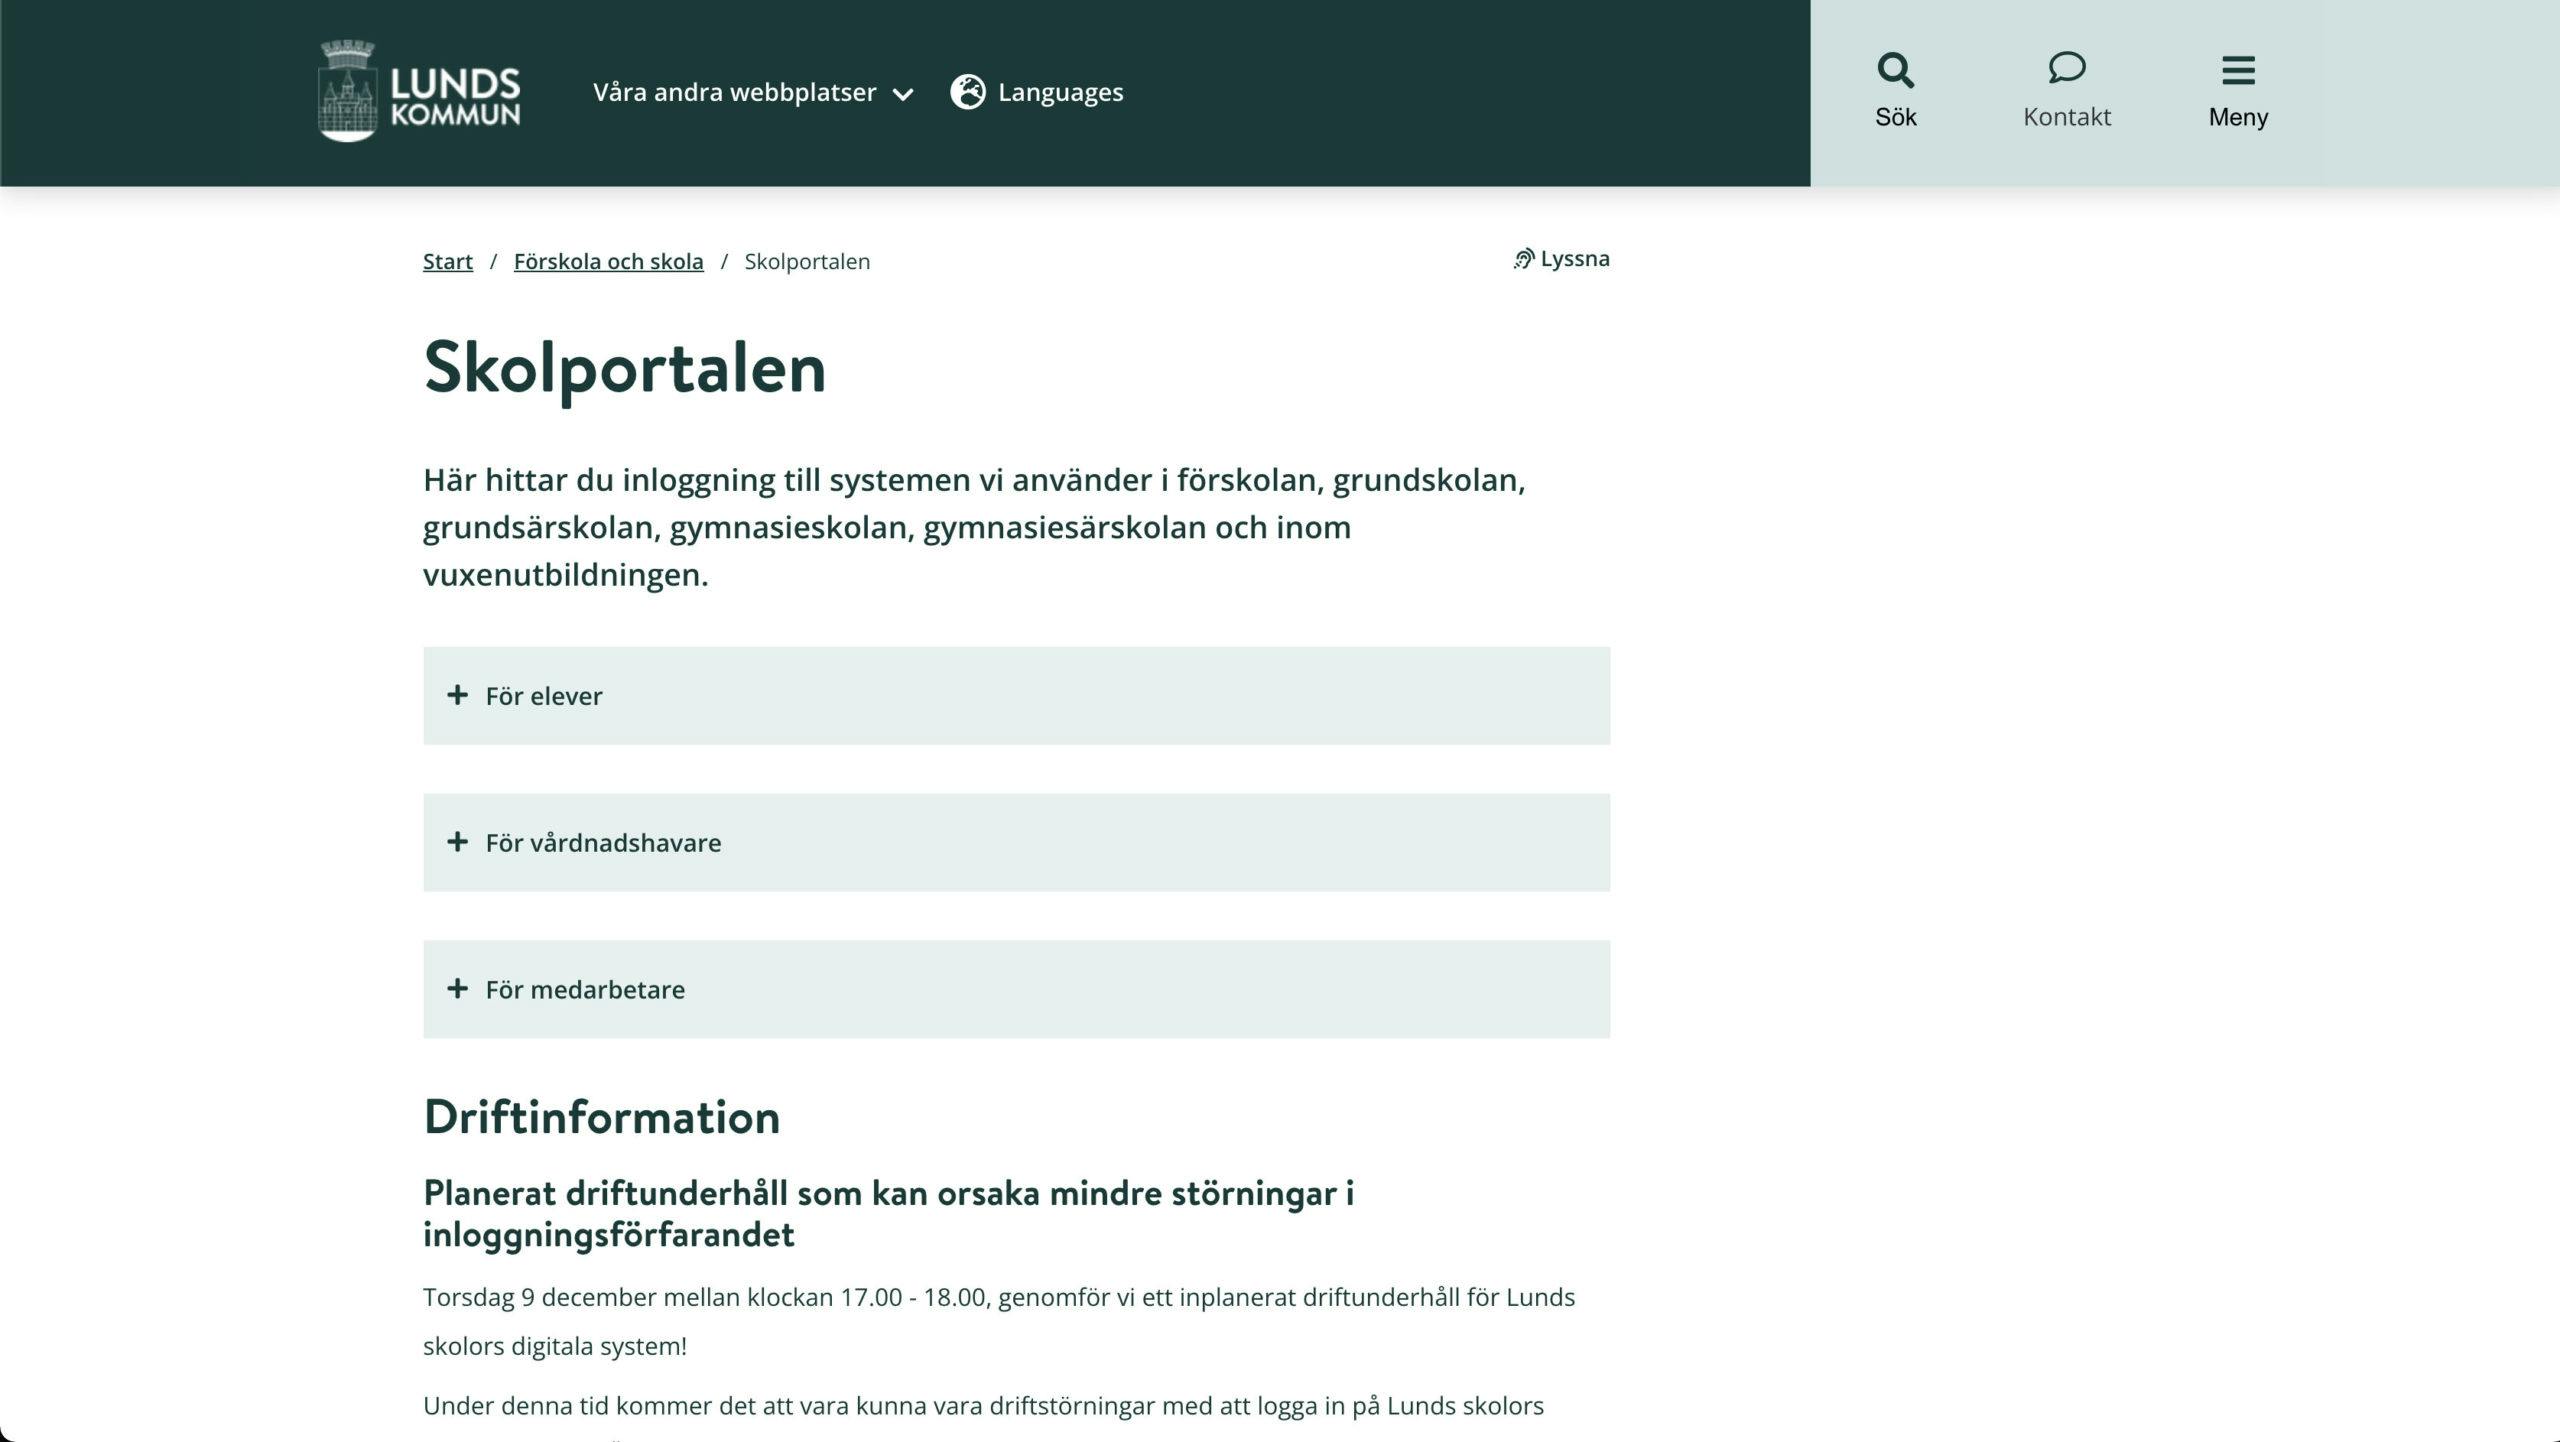 Lund kommuns nya webbplats Skolportal, utvecklad av Consid